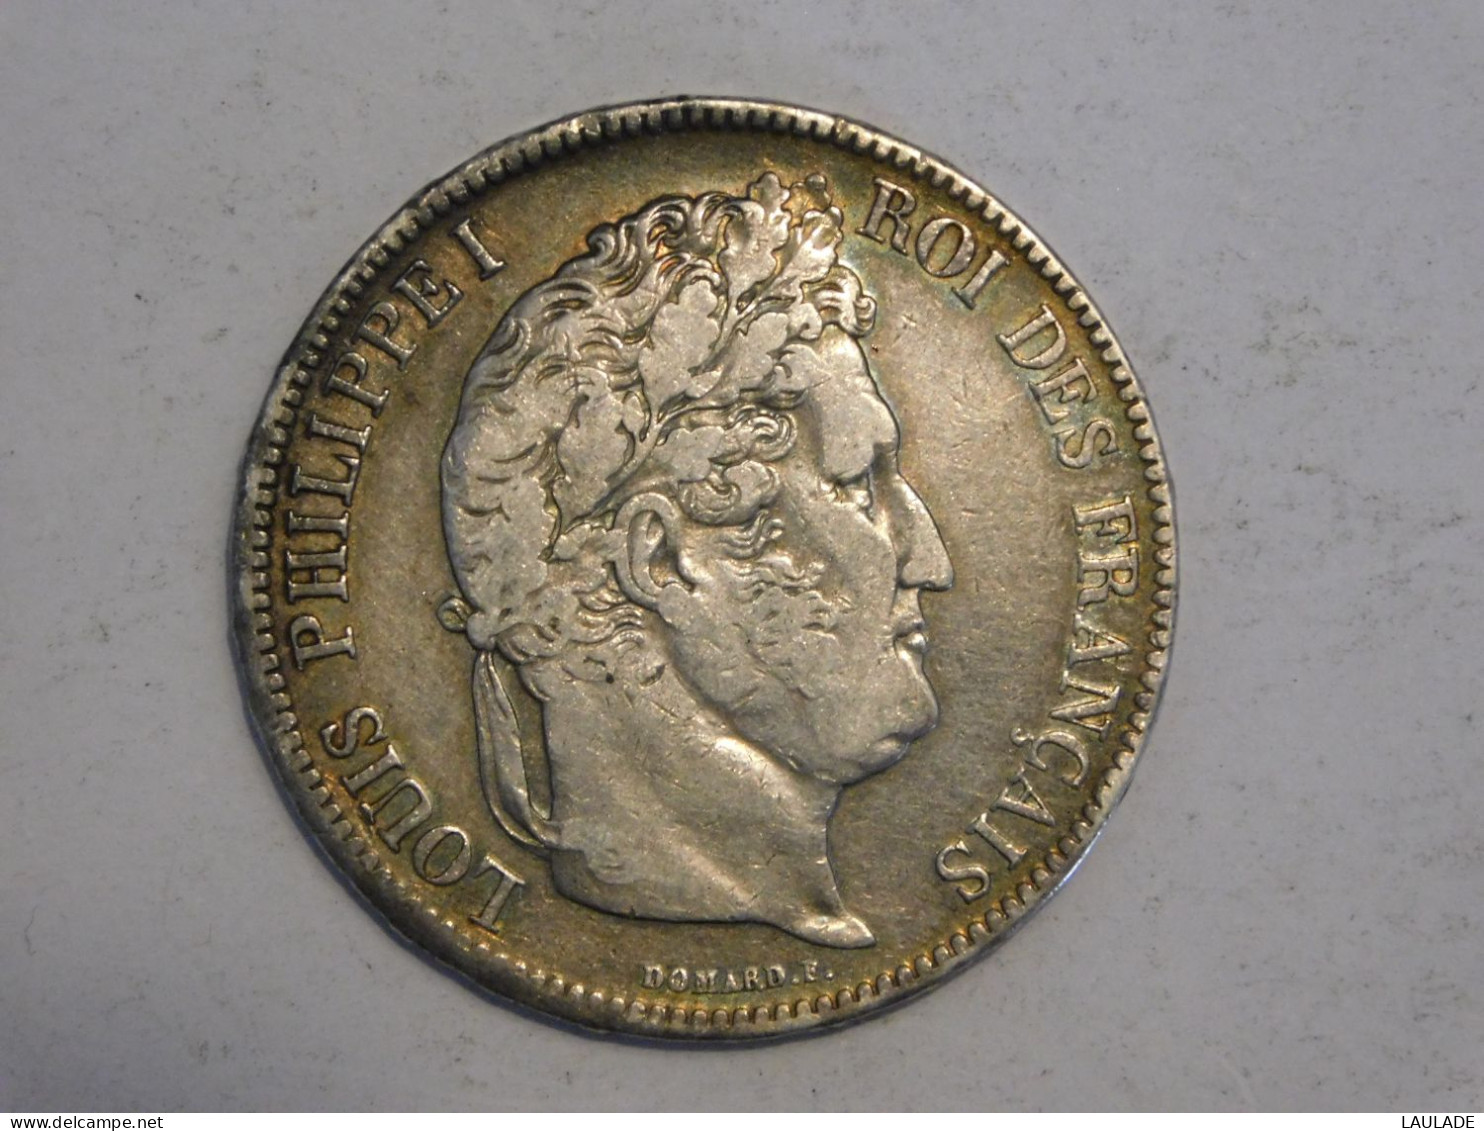 FRANCE 5 Francs 1834 I - Silver, Argent Franc - 5 Francs